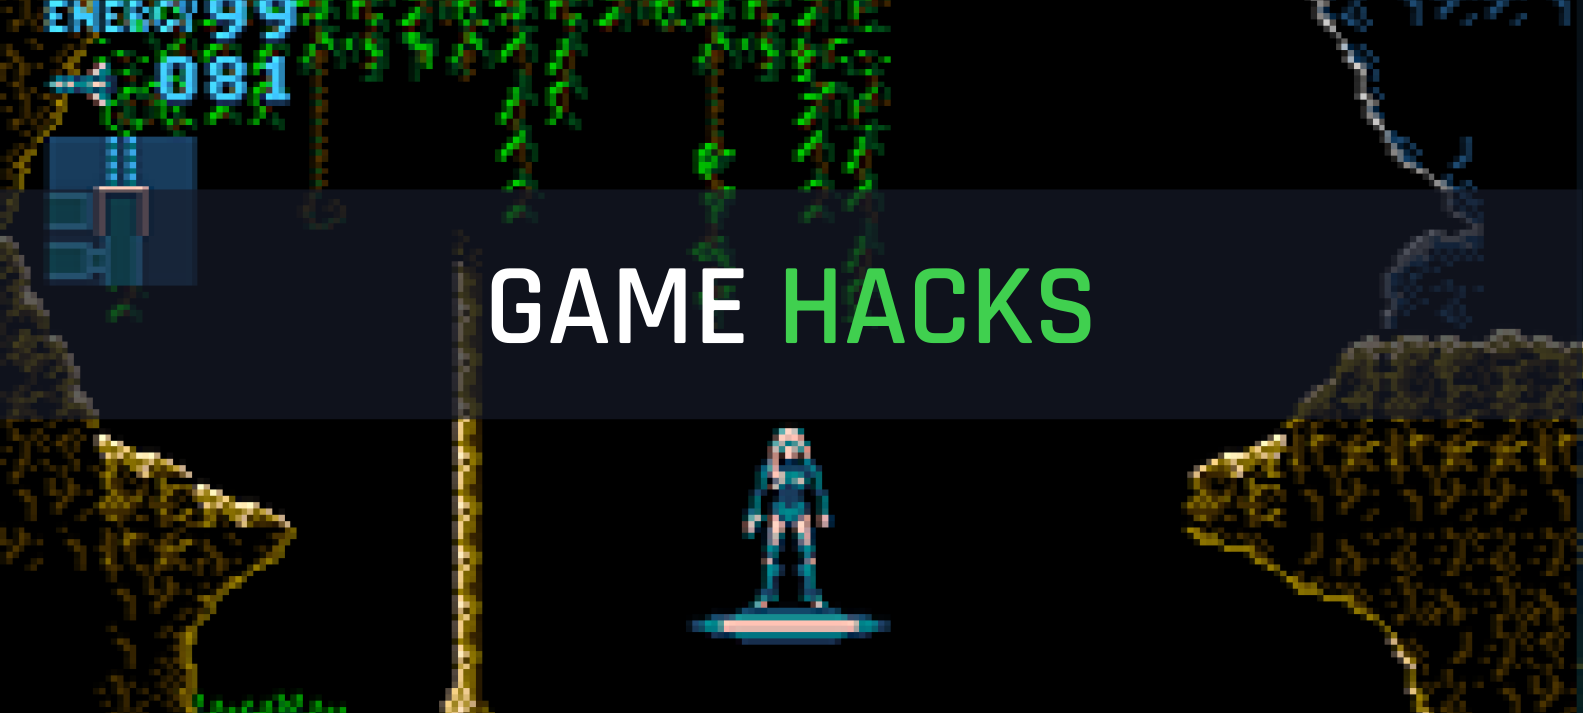 Zelda rom hack #3: fan favorite hacks